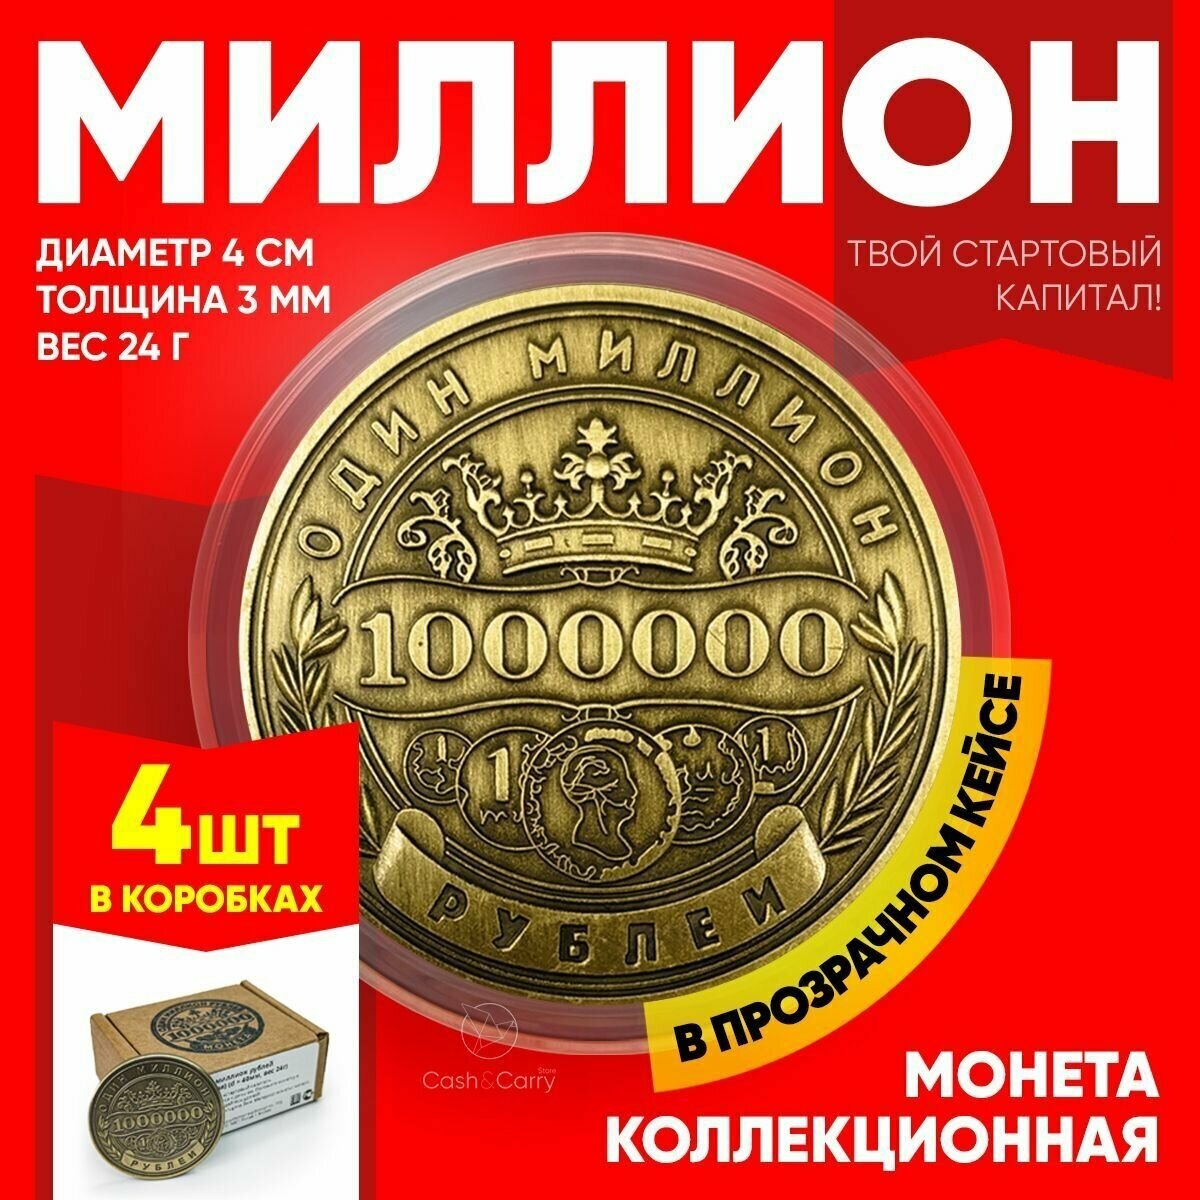 Монеты сувенирные подарочные "4 миллиона рублей" / 4000000 руб / 1+1+1+1 млн. руб (Золото) в пластиковом прозрачном футляре (d 40 мм, вес 24 г)